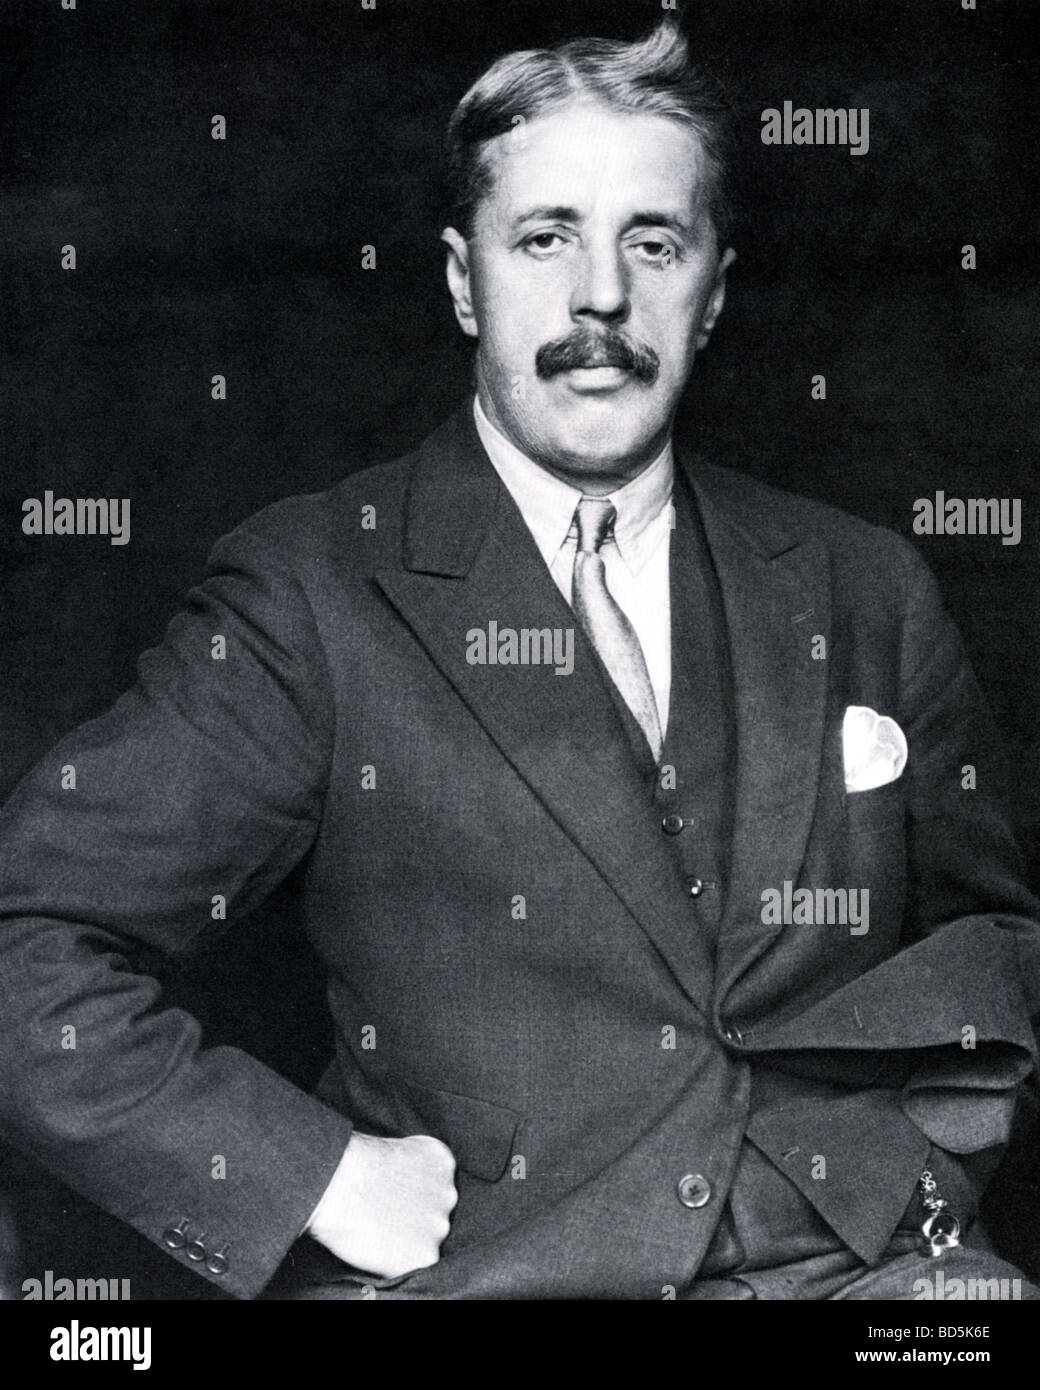 ARNOLD BENNETT romancier anglais en 1929 Banque D'Images